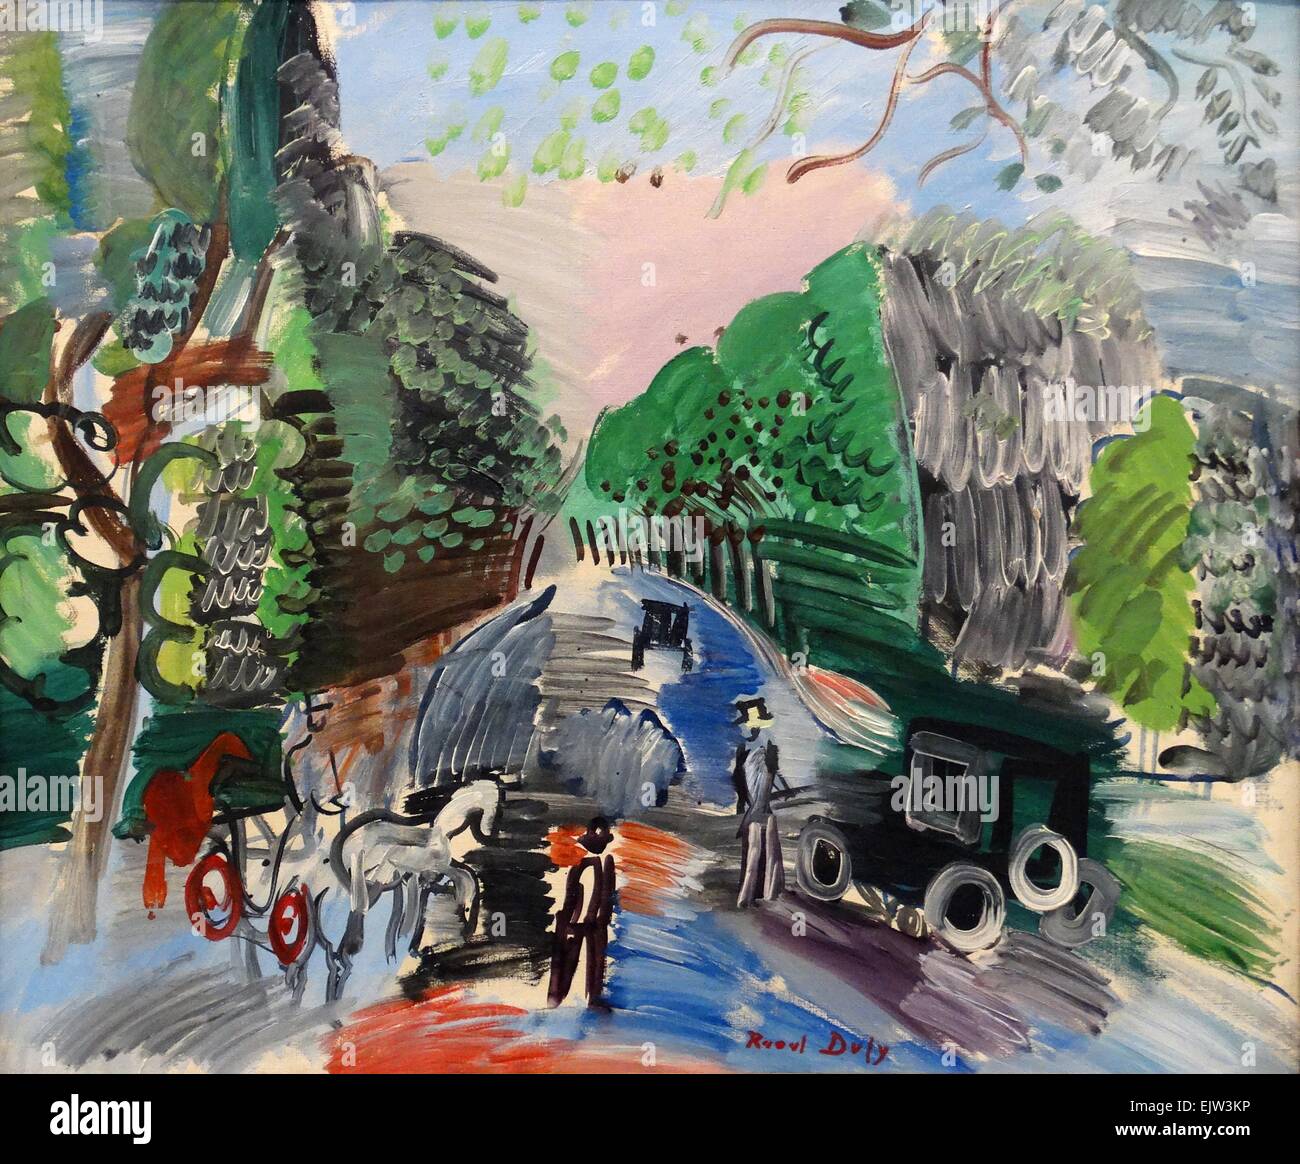 Au Bois De Boulogne von Raoul Dufy (1877-1953). Öl auf Leinwand, 1920. Dufy war ein französischer fauvistischen Maler, der einen farbenfrohen, dekorativen Stil entwickelt, der schnell in Mode kam. Stockfoto